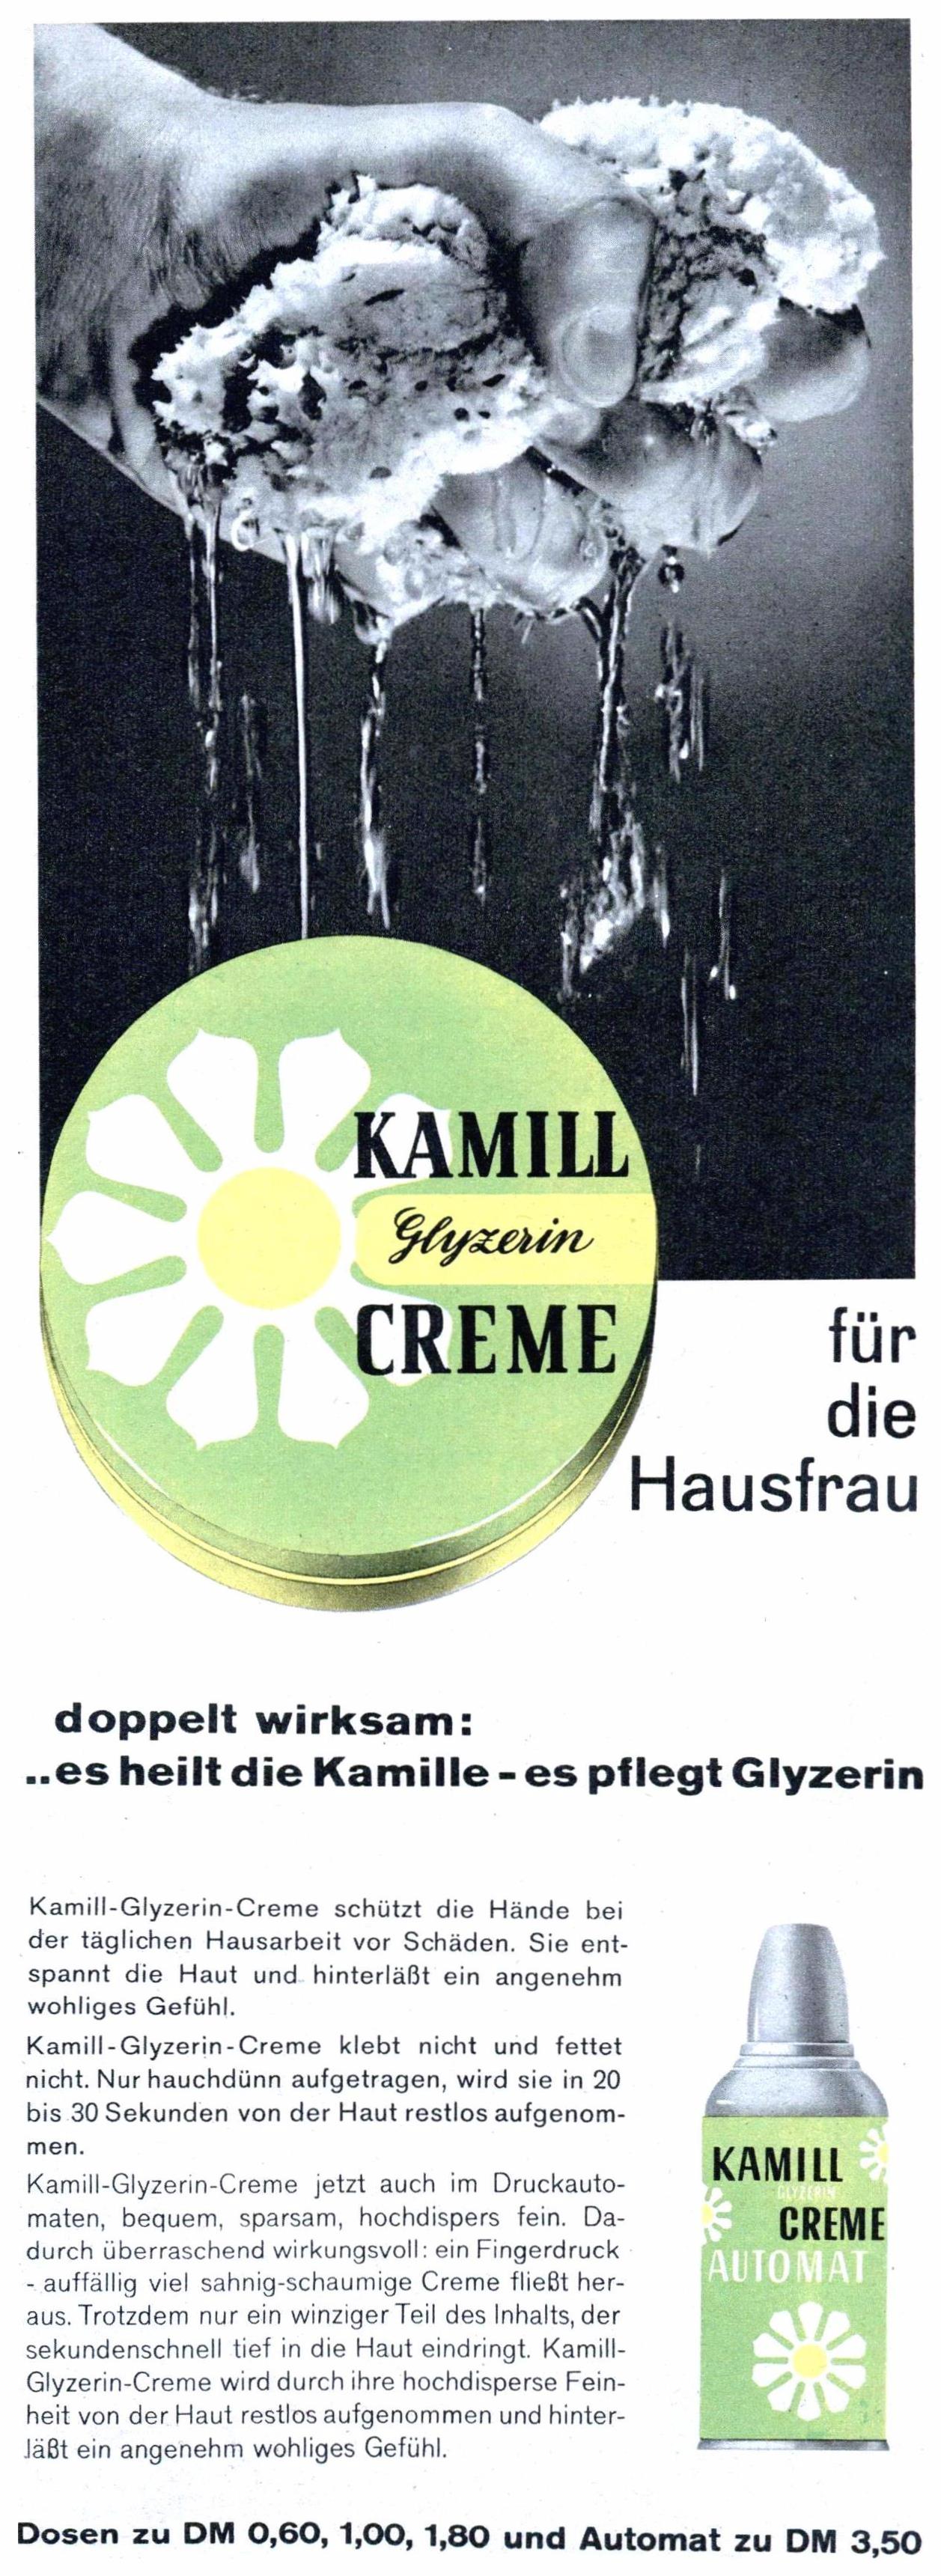 Kamill 1960 0.jpg